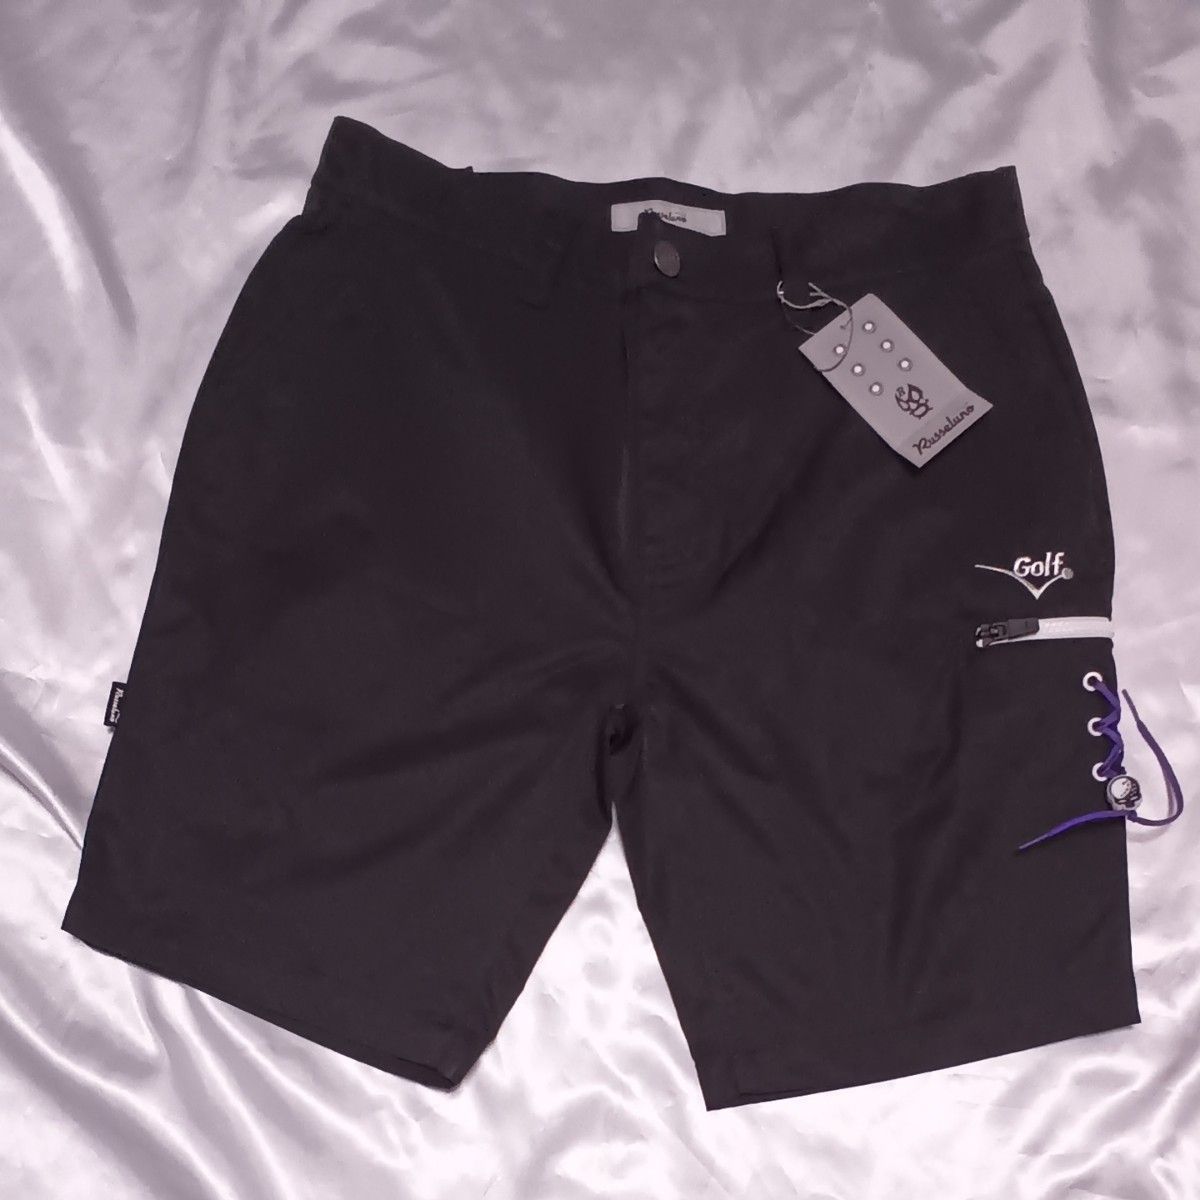 ラッセルノ ゴルフ メンズ  XL 6サイズ ポロシャツ ハーフパンツ セットアップ 上下セット グレー  ブラック  新品未使用